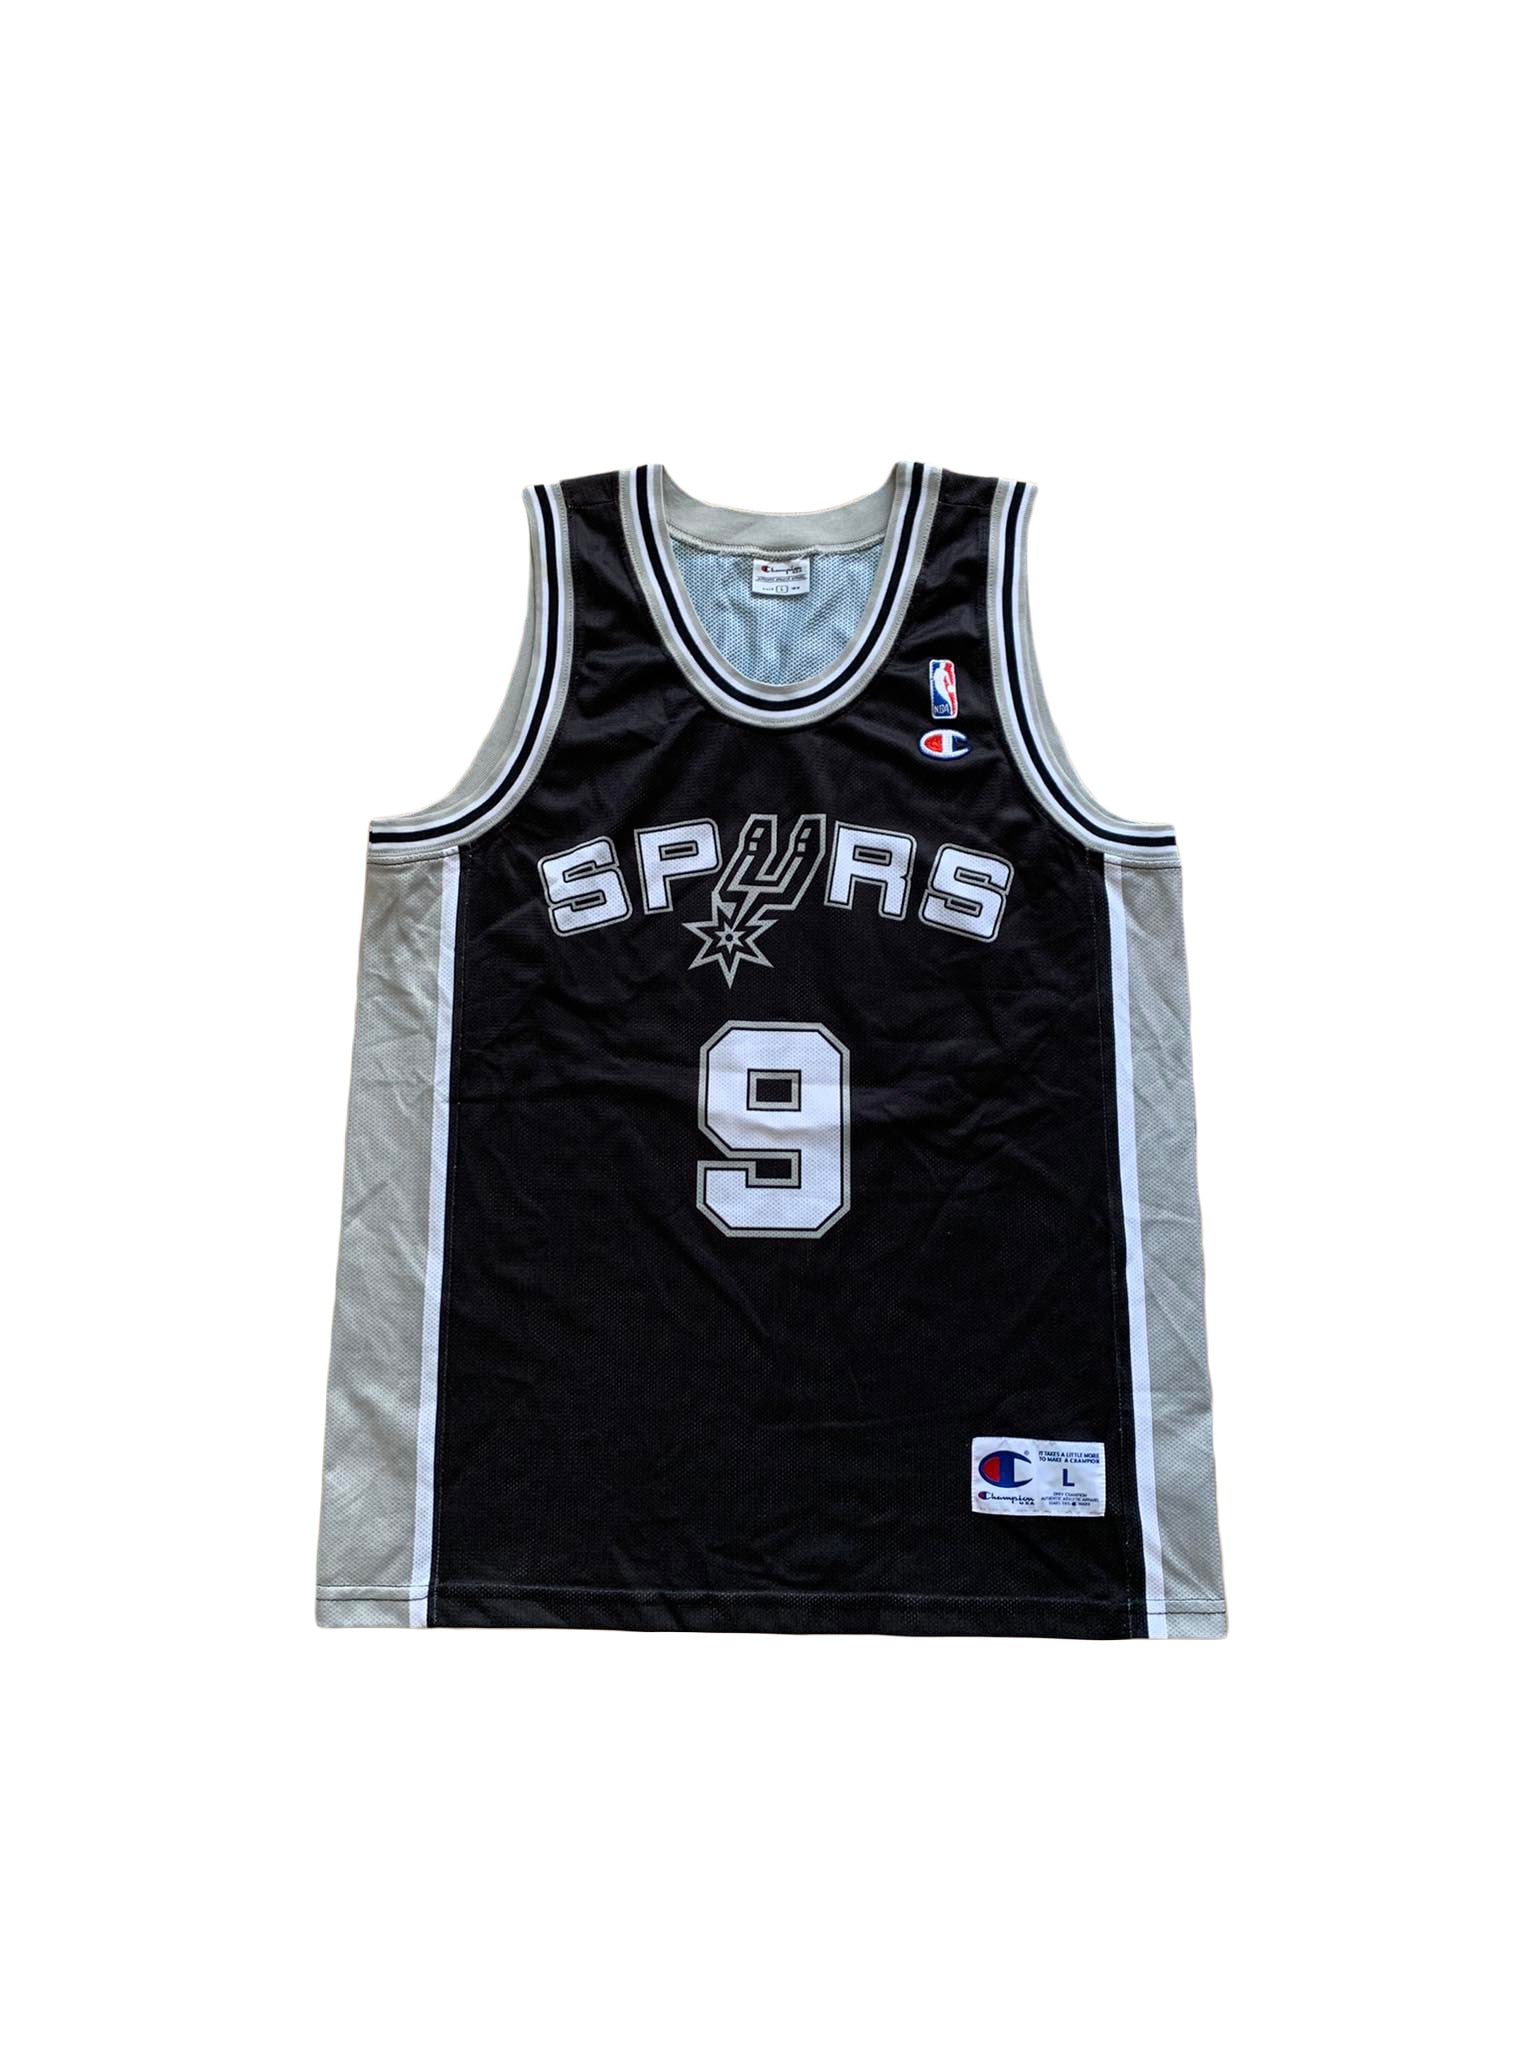 New M Manu Ginobili San Antonio Spurs Youth Jersey Black Fanatics NBA  Champion